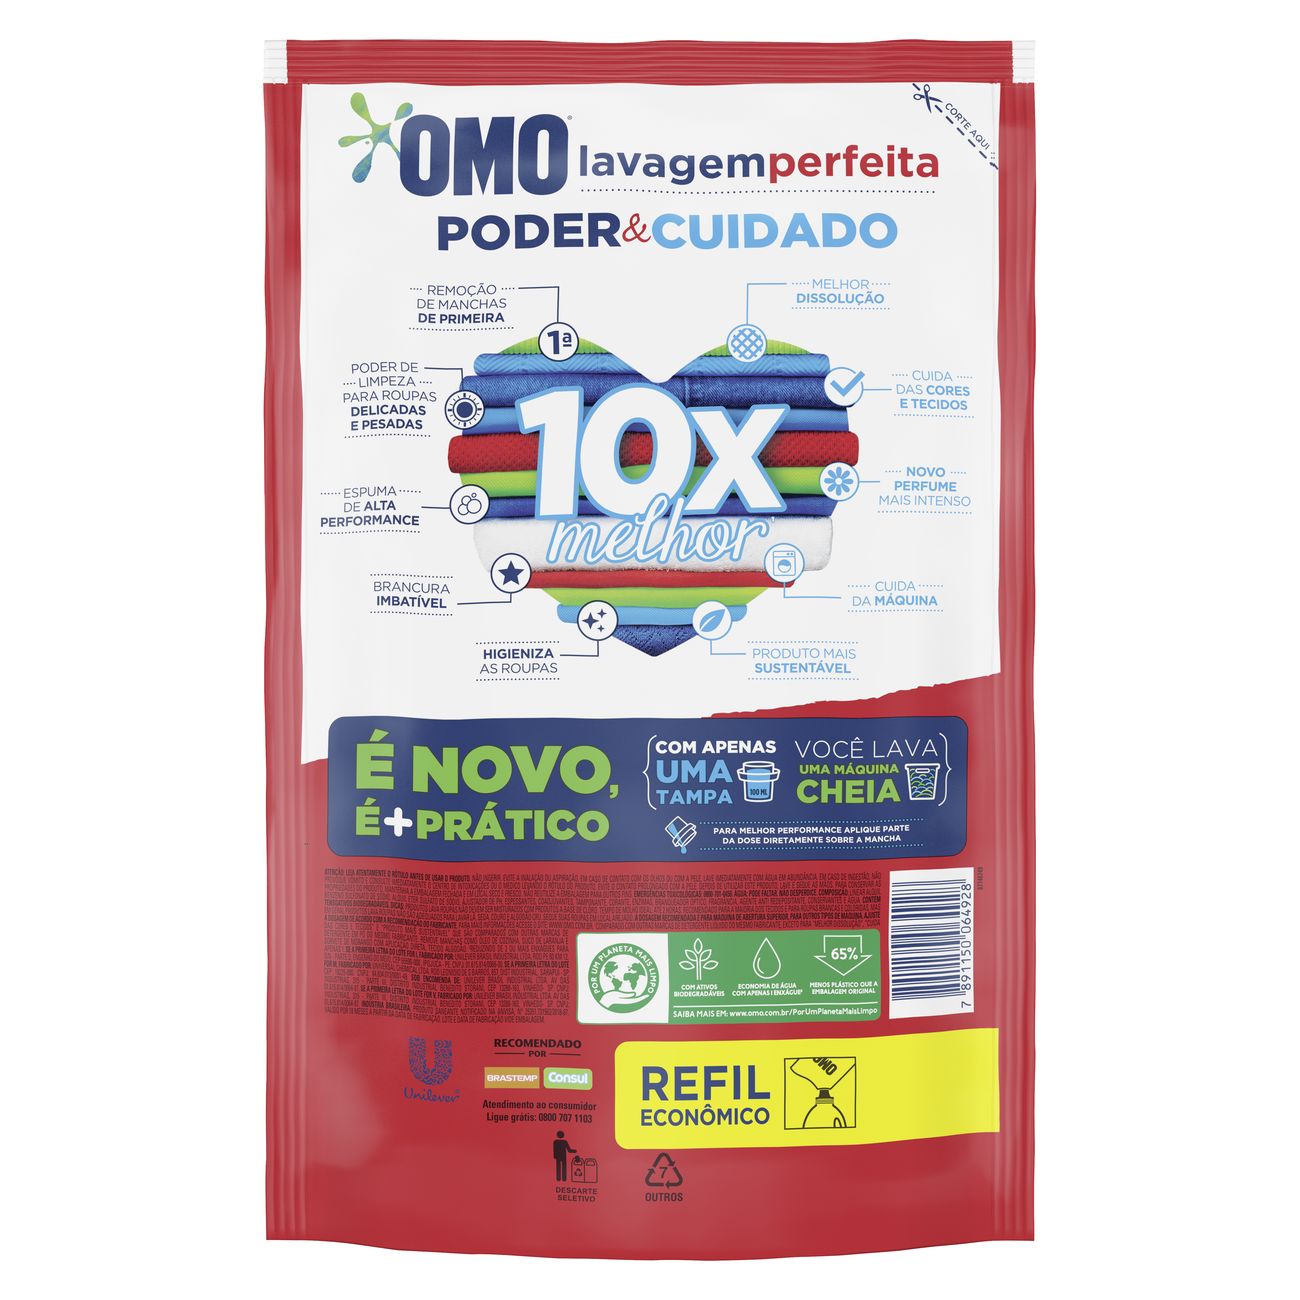 Detergente Liquido Omo Lavagem Perfeita Refil 900ml | Caixa com 12 Unidades